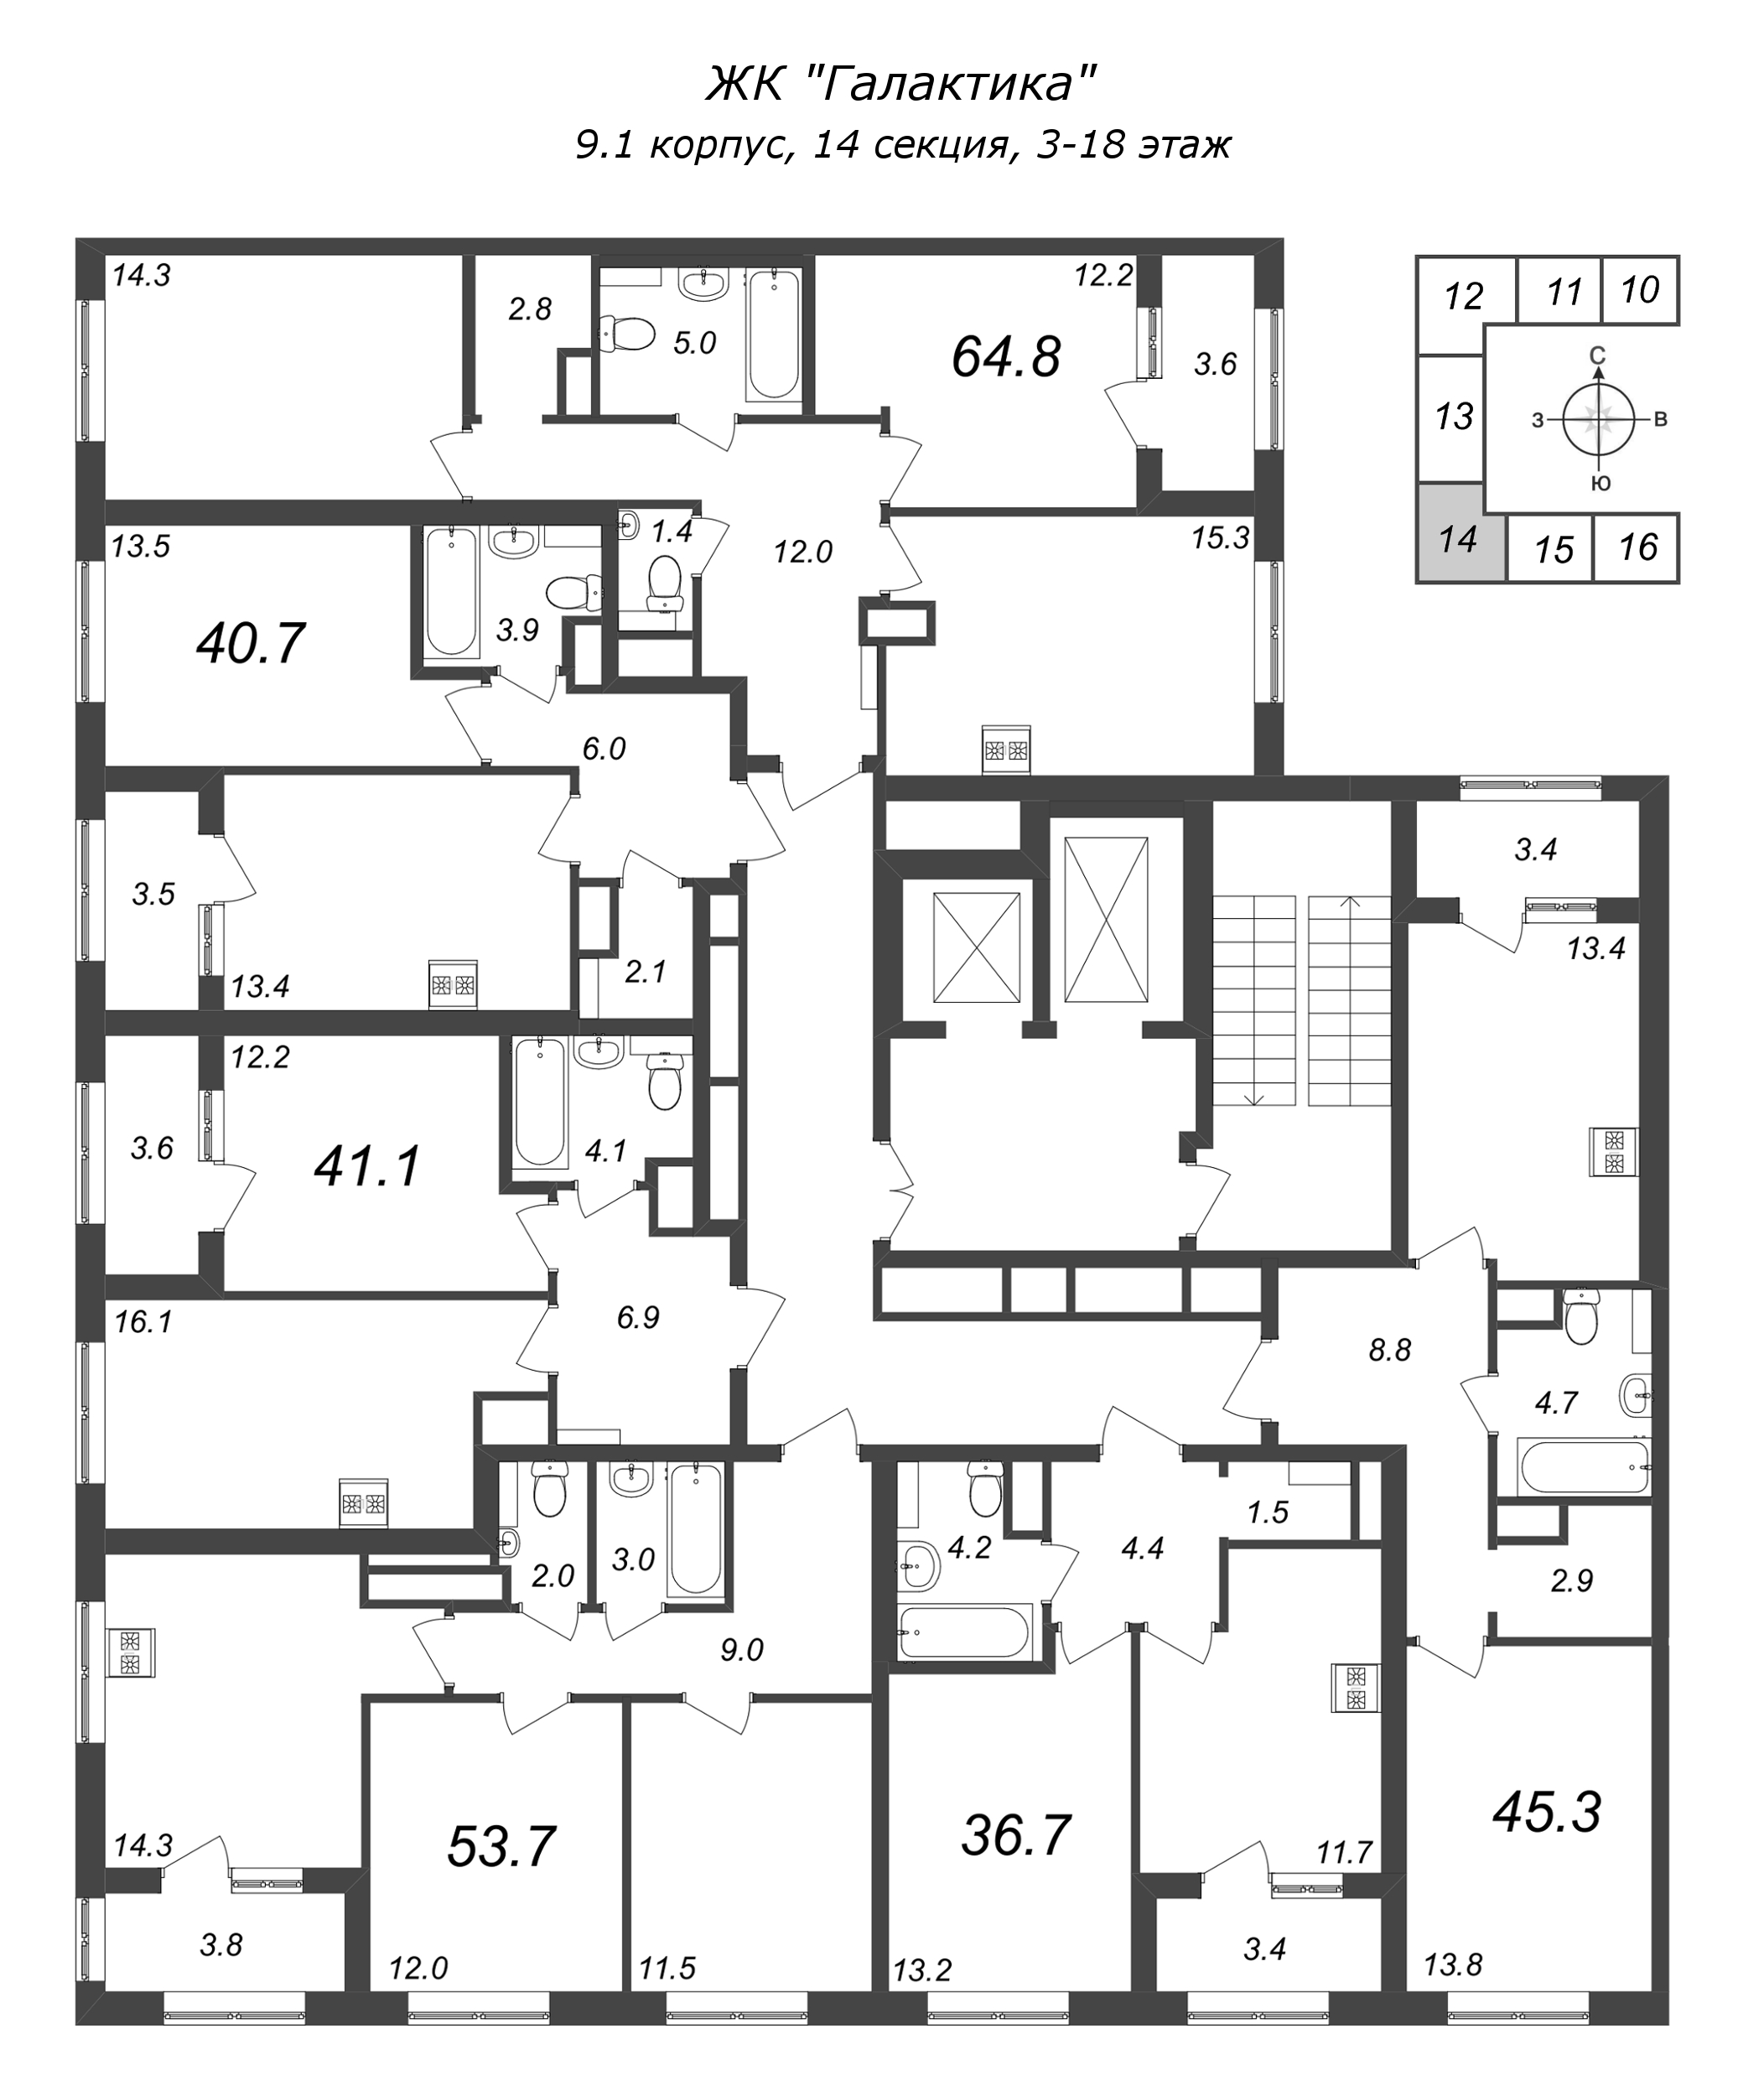 2-комнатная квартира, 53.6 м² в ЖК "Галактика" - планировка этажа